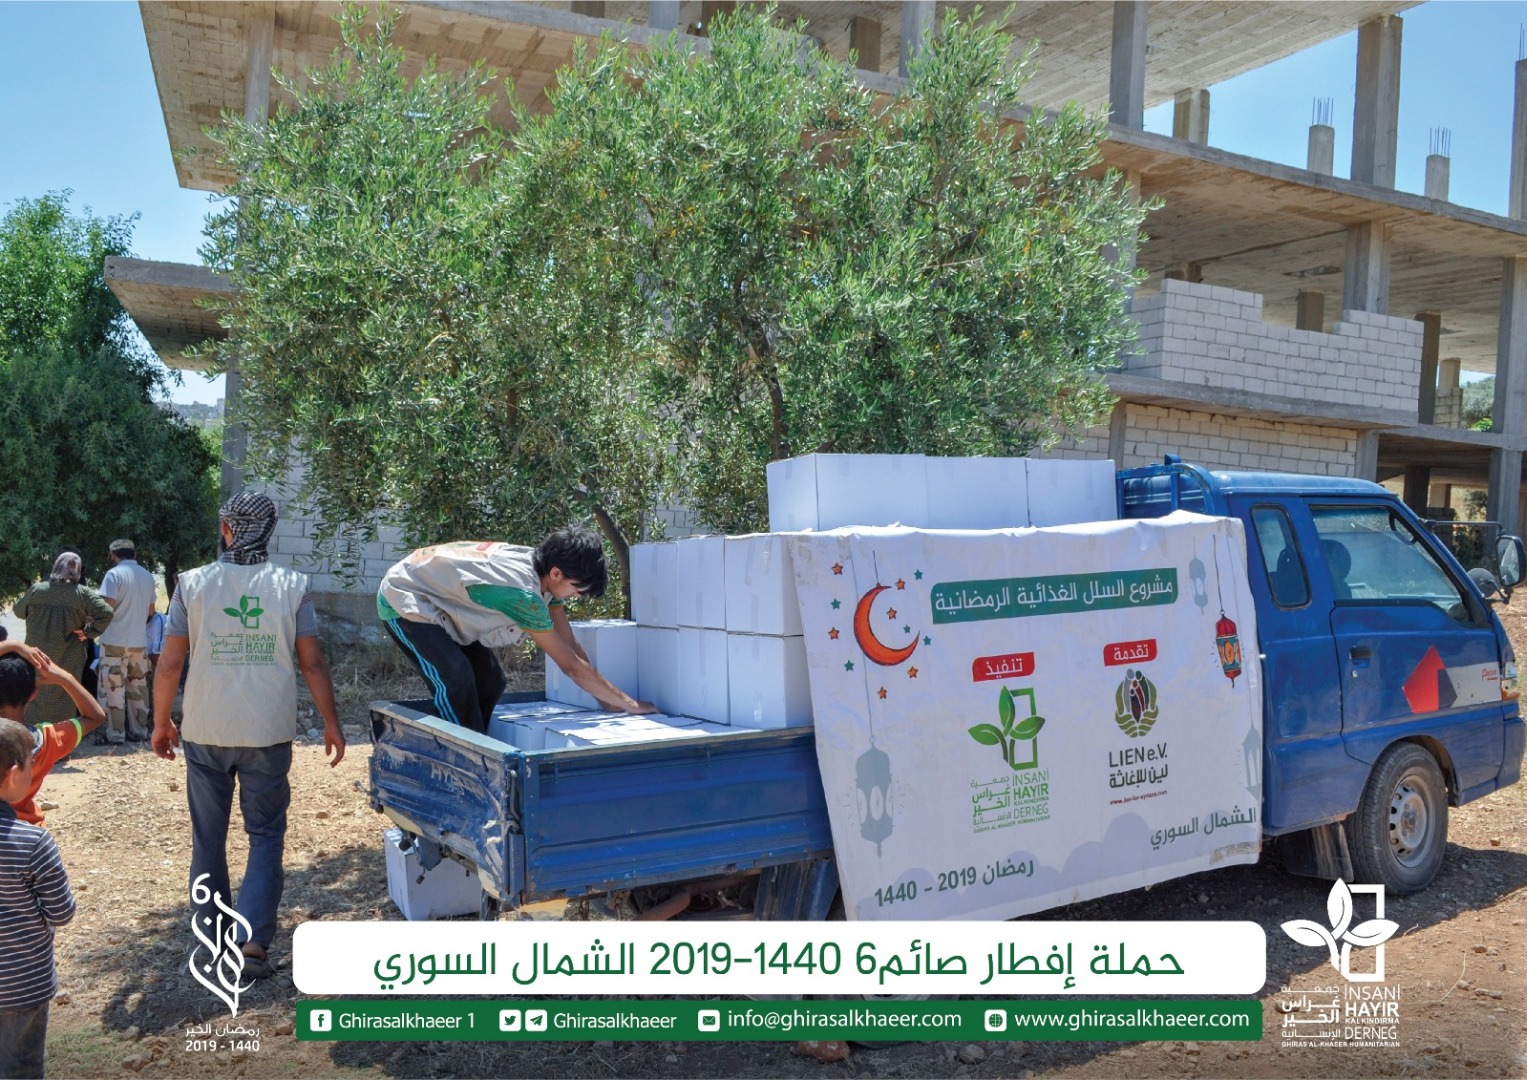 حملة إفطار صائم 6 لعام 1440 توزيع السلل الغذائية في الشمال السوري